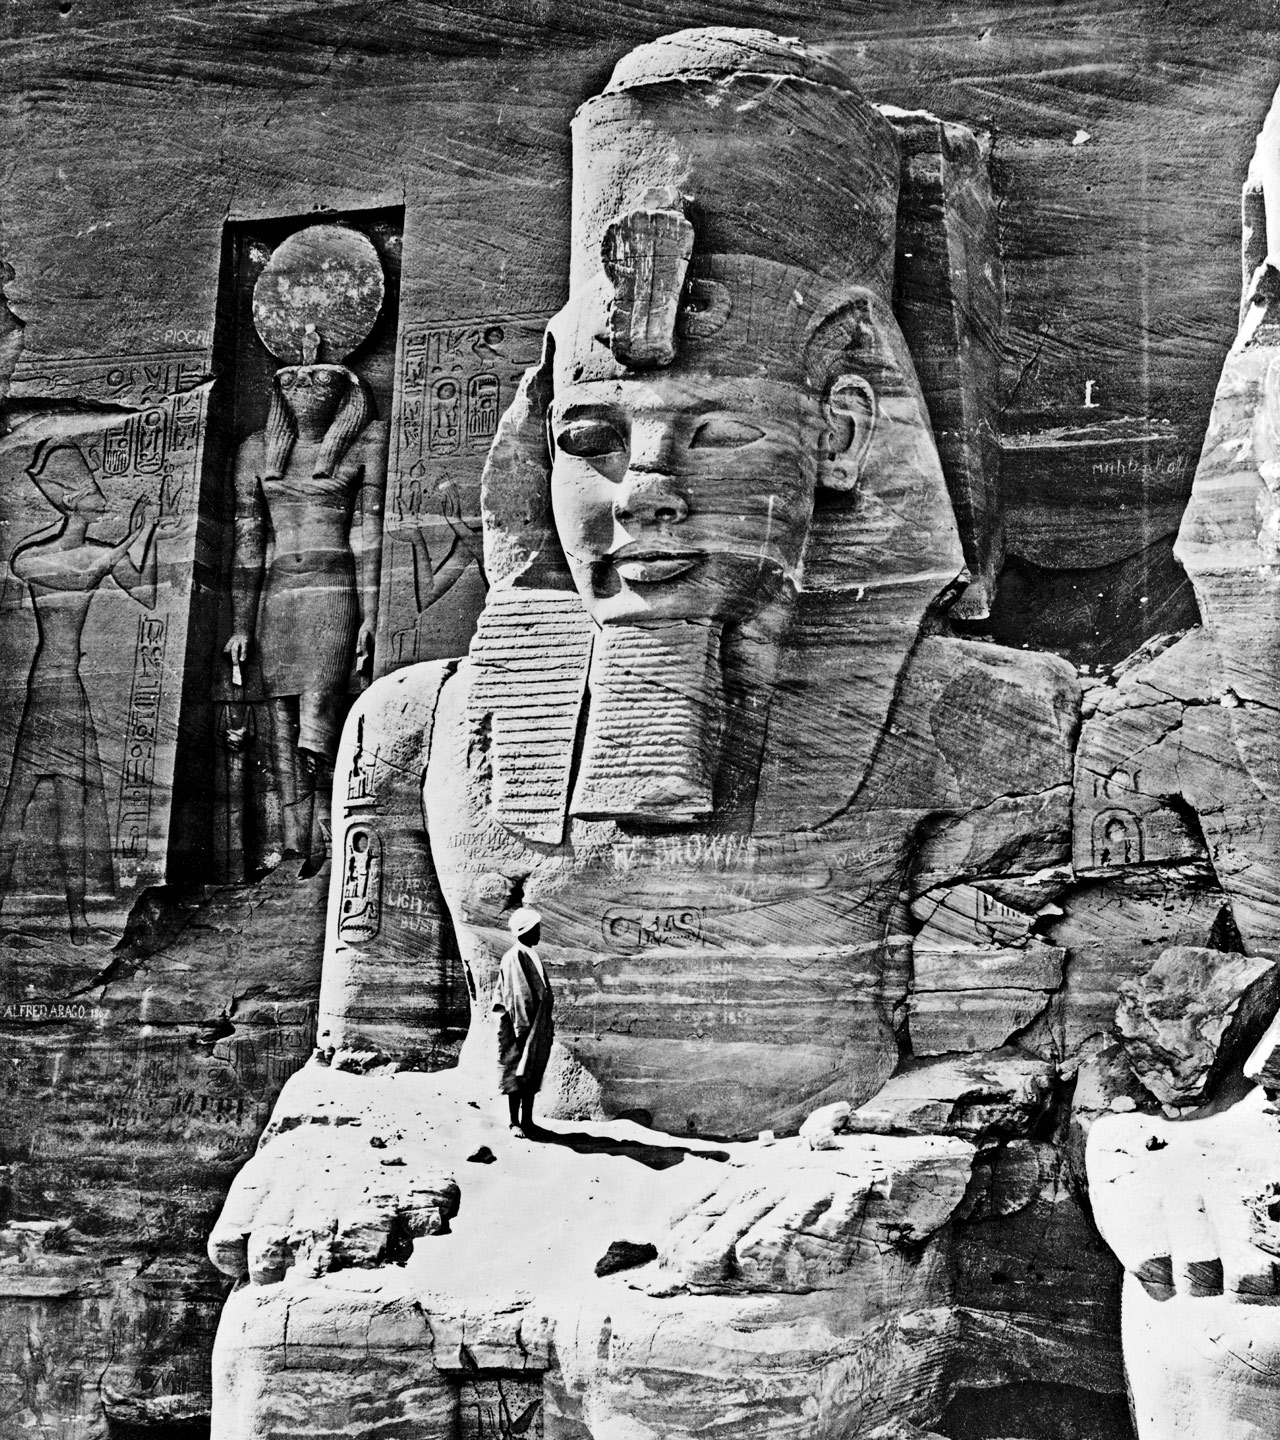 [Colossus of Ramses II, Abū Sunbul, Egypt]